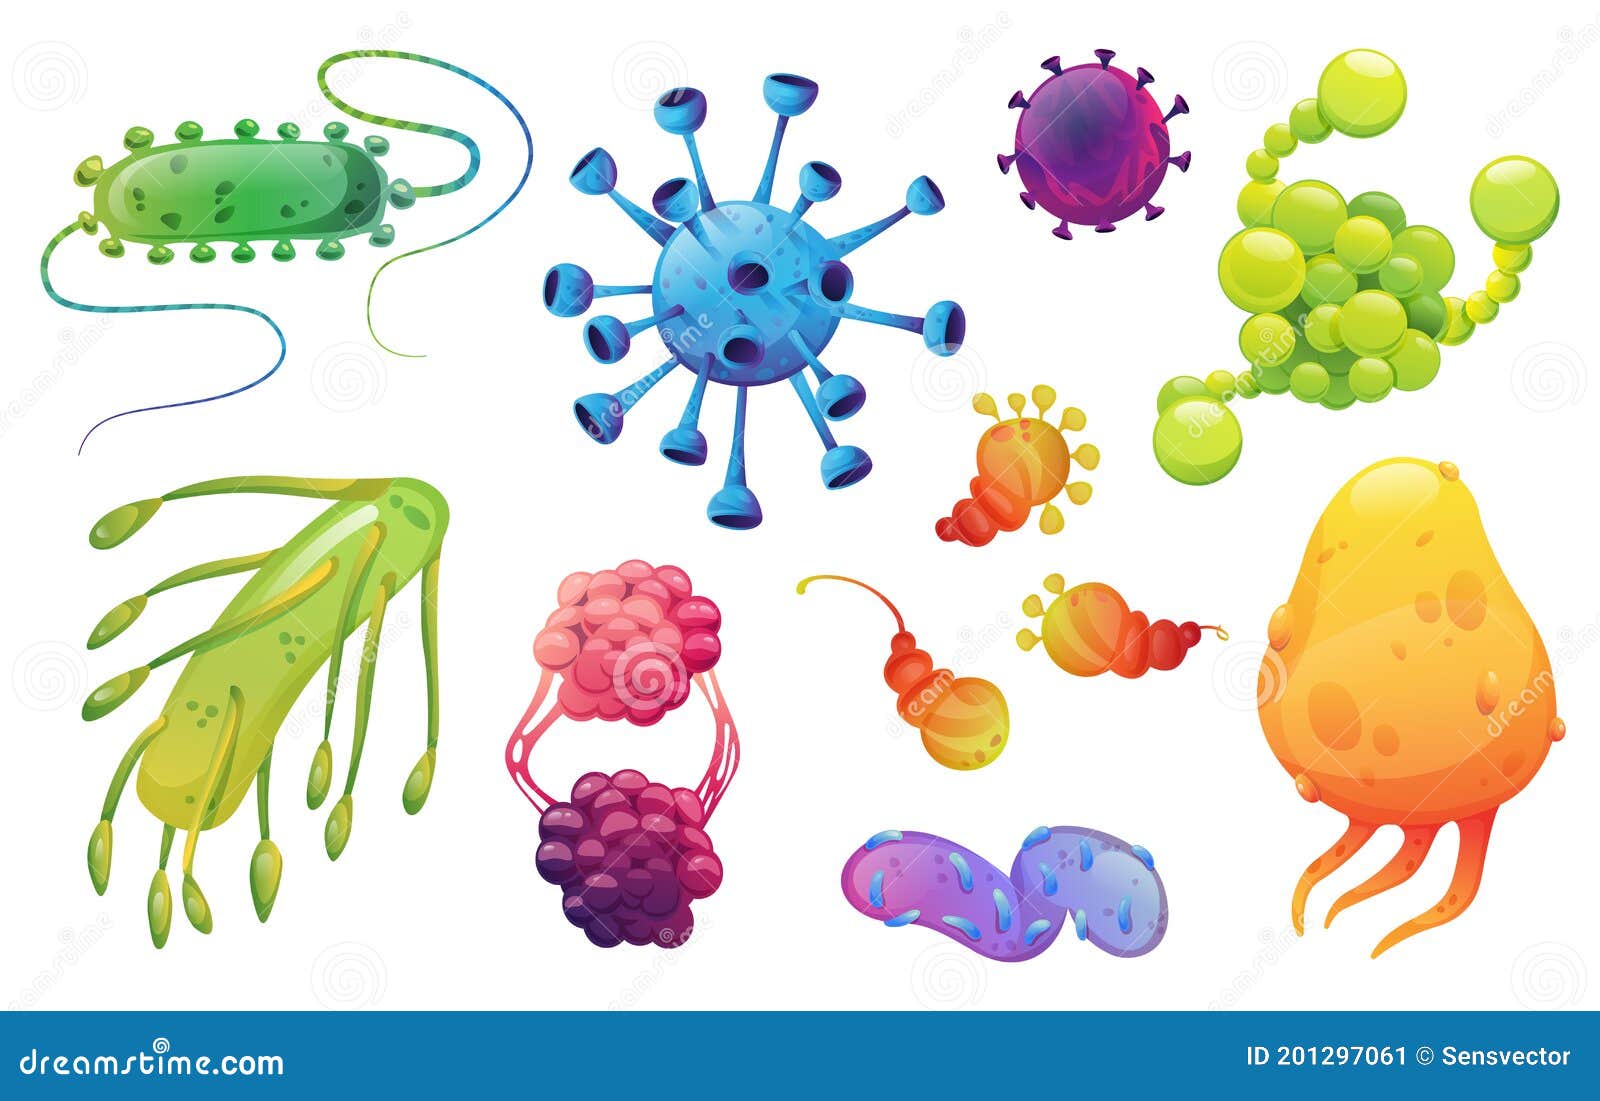 Conjunto de vírus e bactérias fofos de desenho animado isolado no